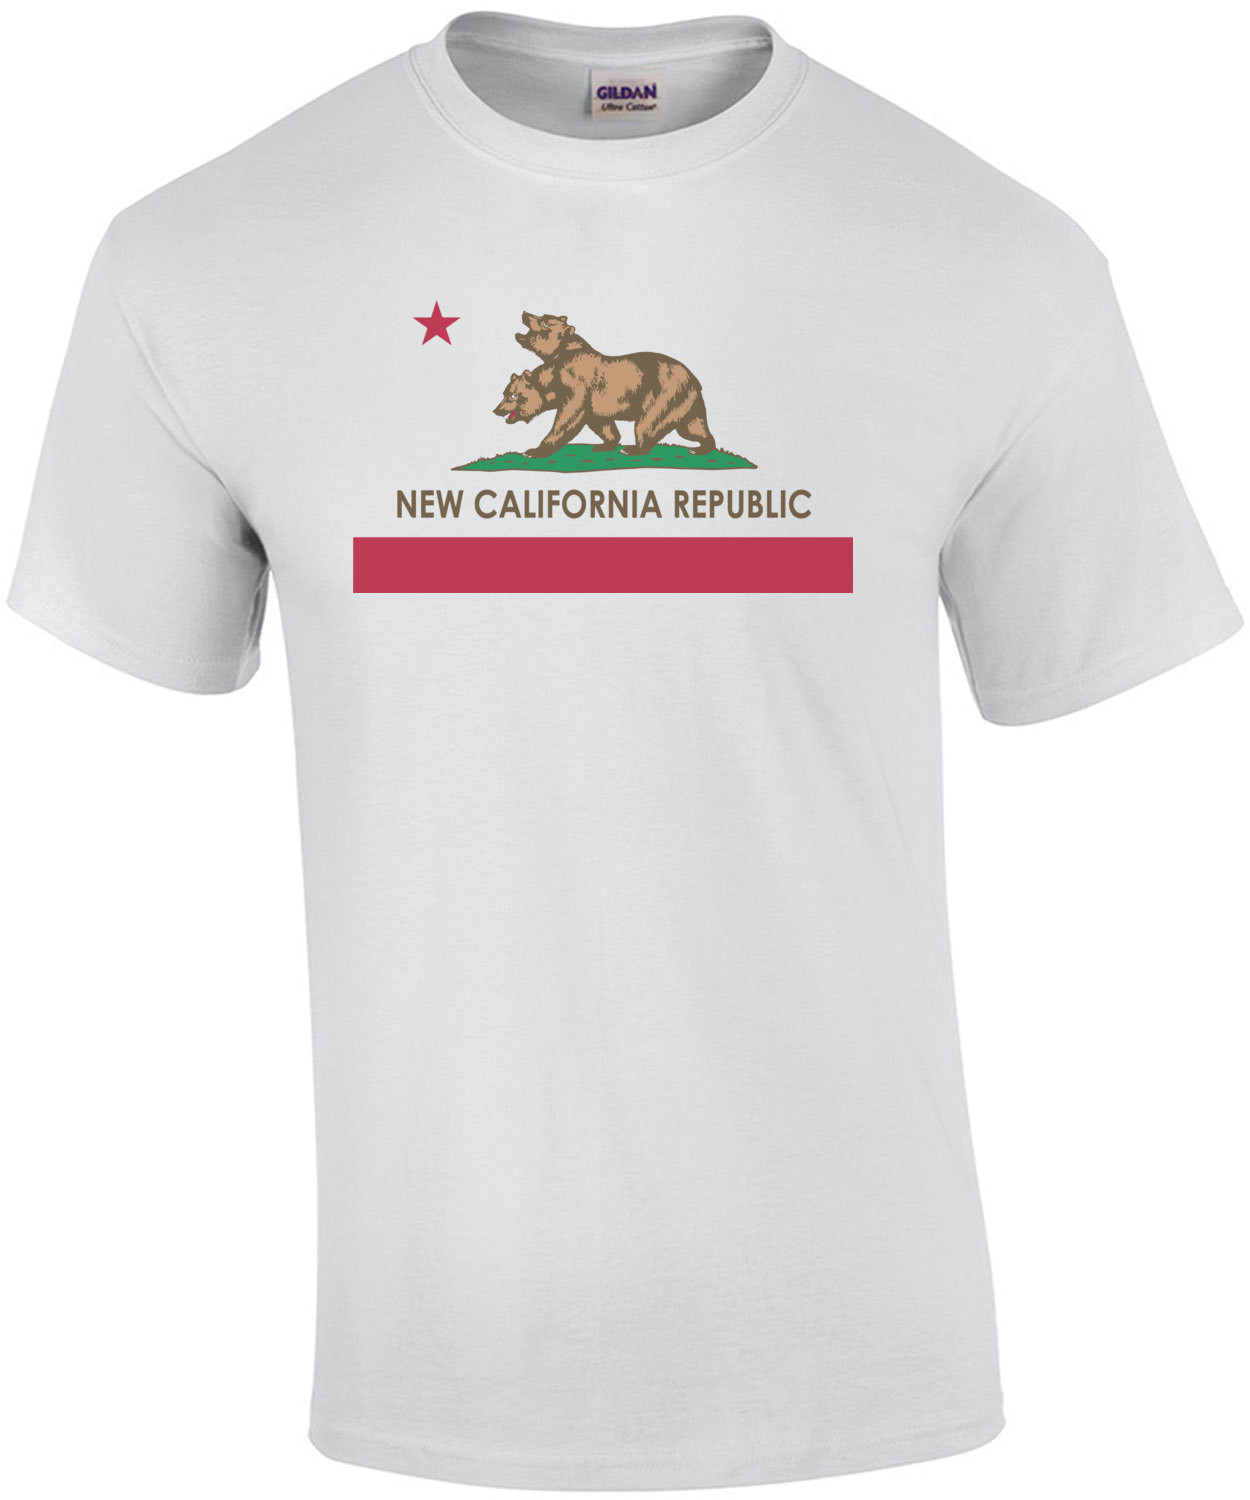 New California Republic - California T-Shirt